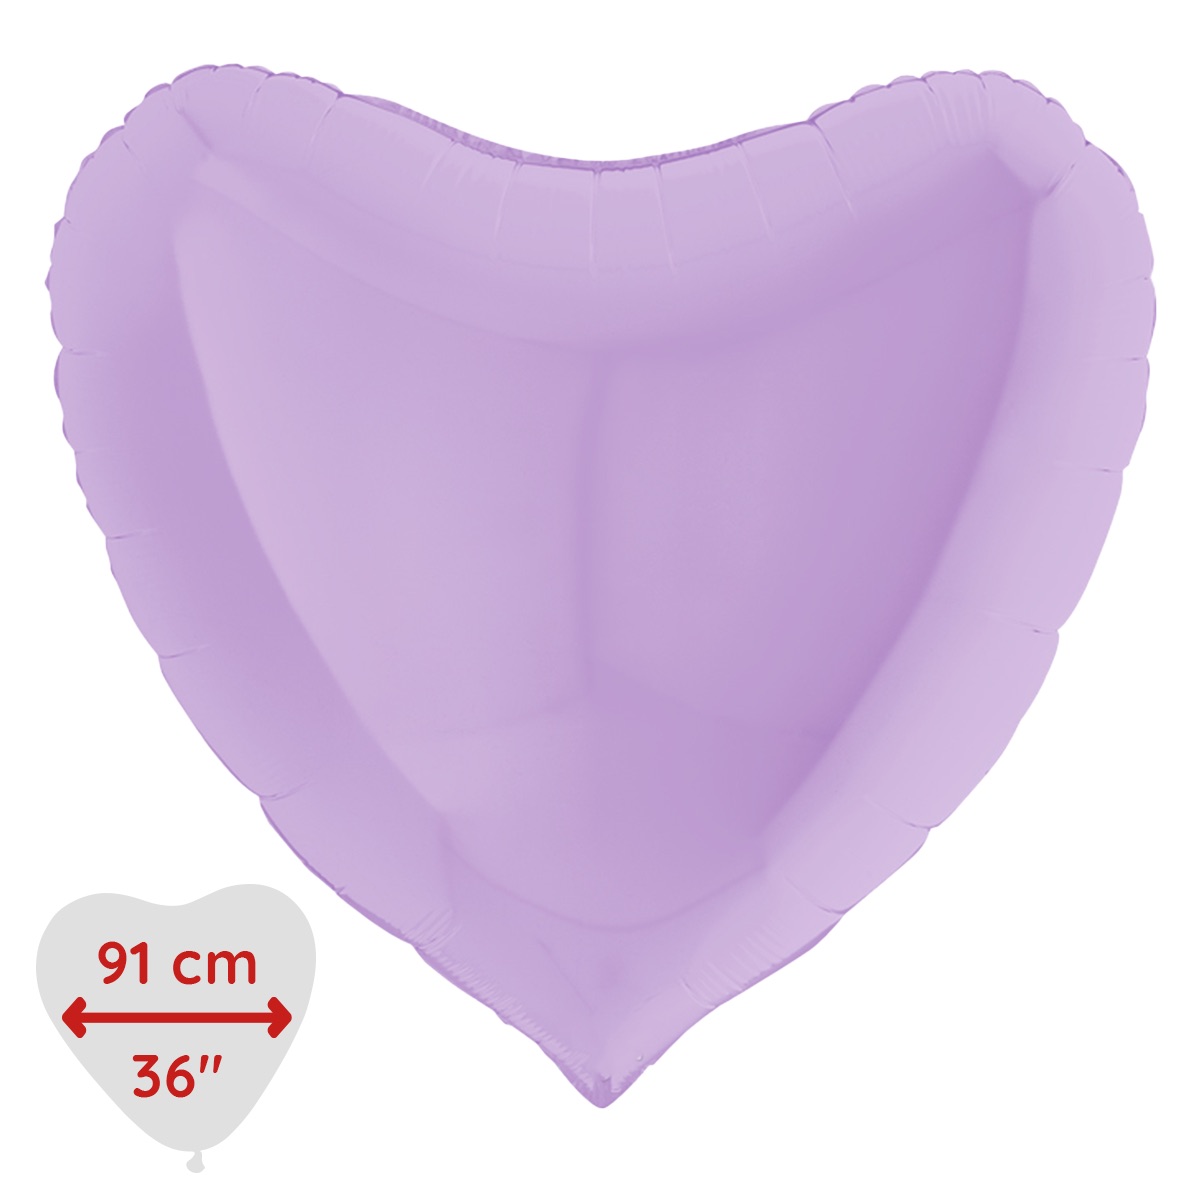 Folieballong - Hjärta Pastell-lila Matte 91 cm